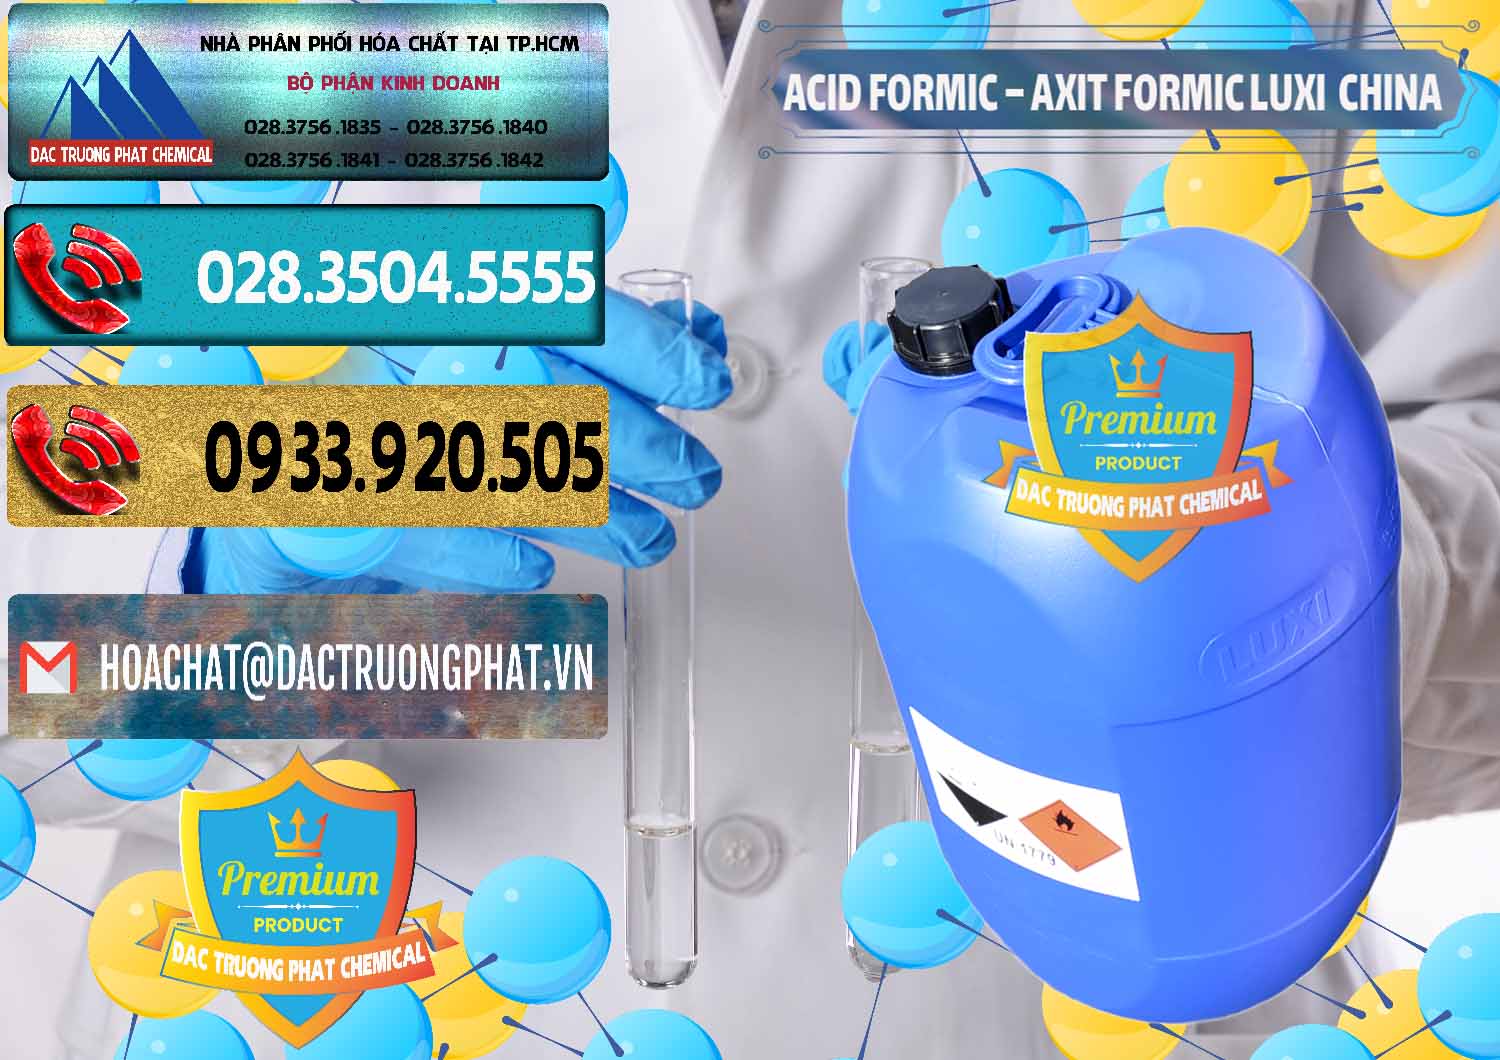 Đơn vị chuyên bán và cung cấp Acid Formic - Axit Formic Luxi Trung Quốc China - 0029 - Đơn vị cung cấp ( phân phối ) hóa chất tại TP.HCM - hoachatdetnhuom.com